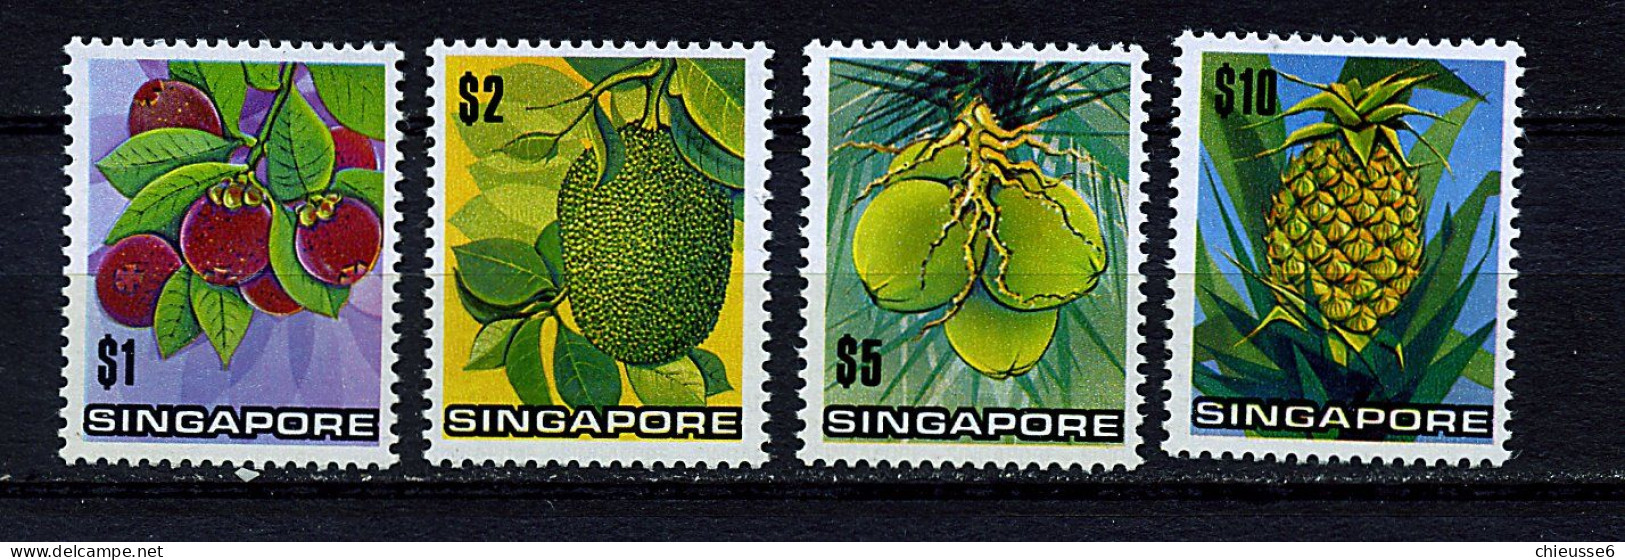 Singapour ** N° 1794 à 1798 - Fruits - Singapur (1959-...)